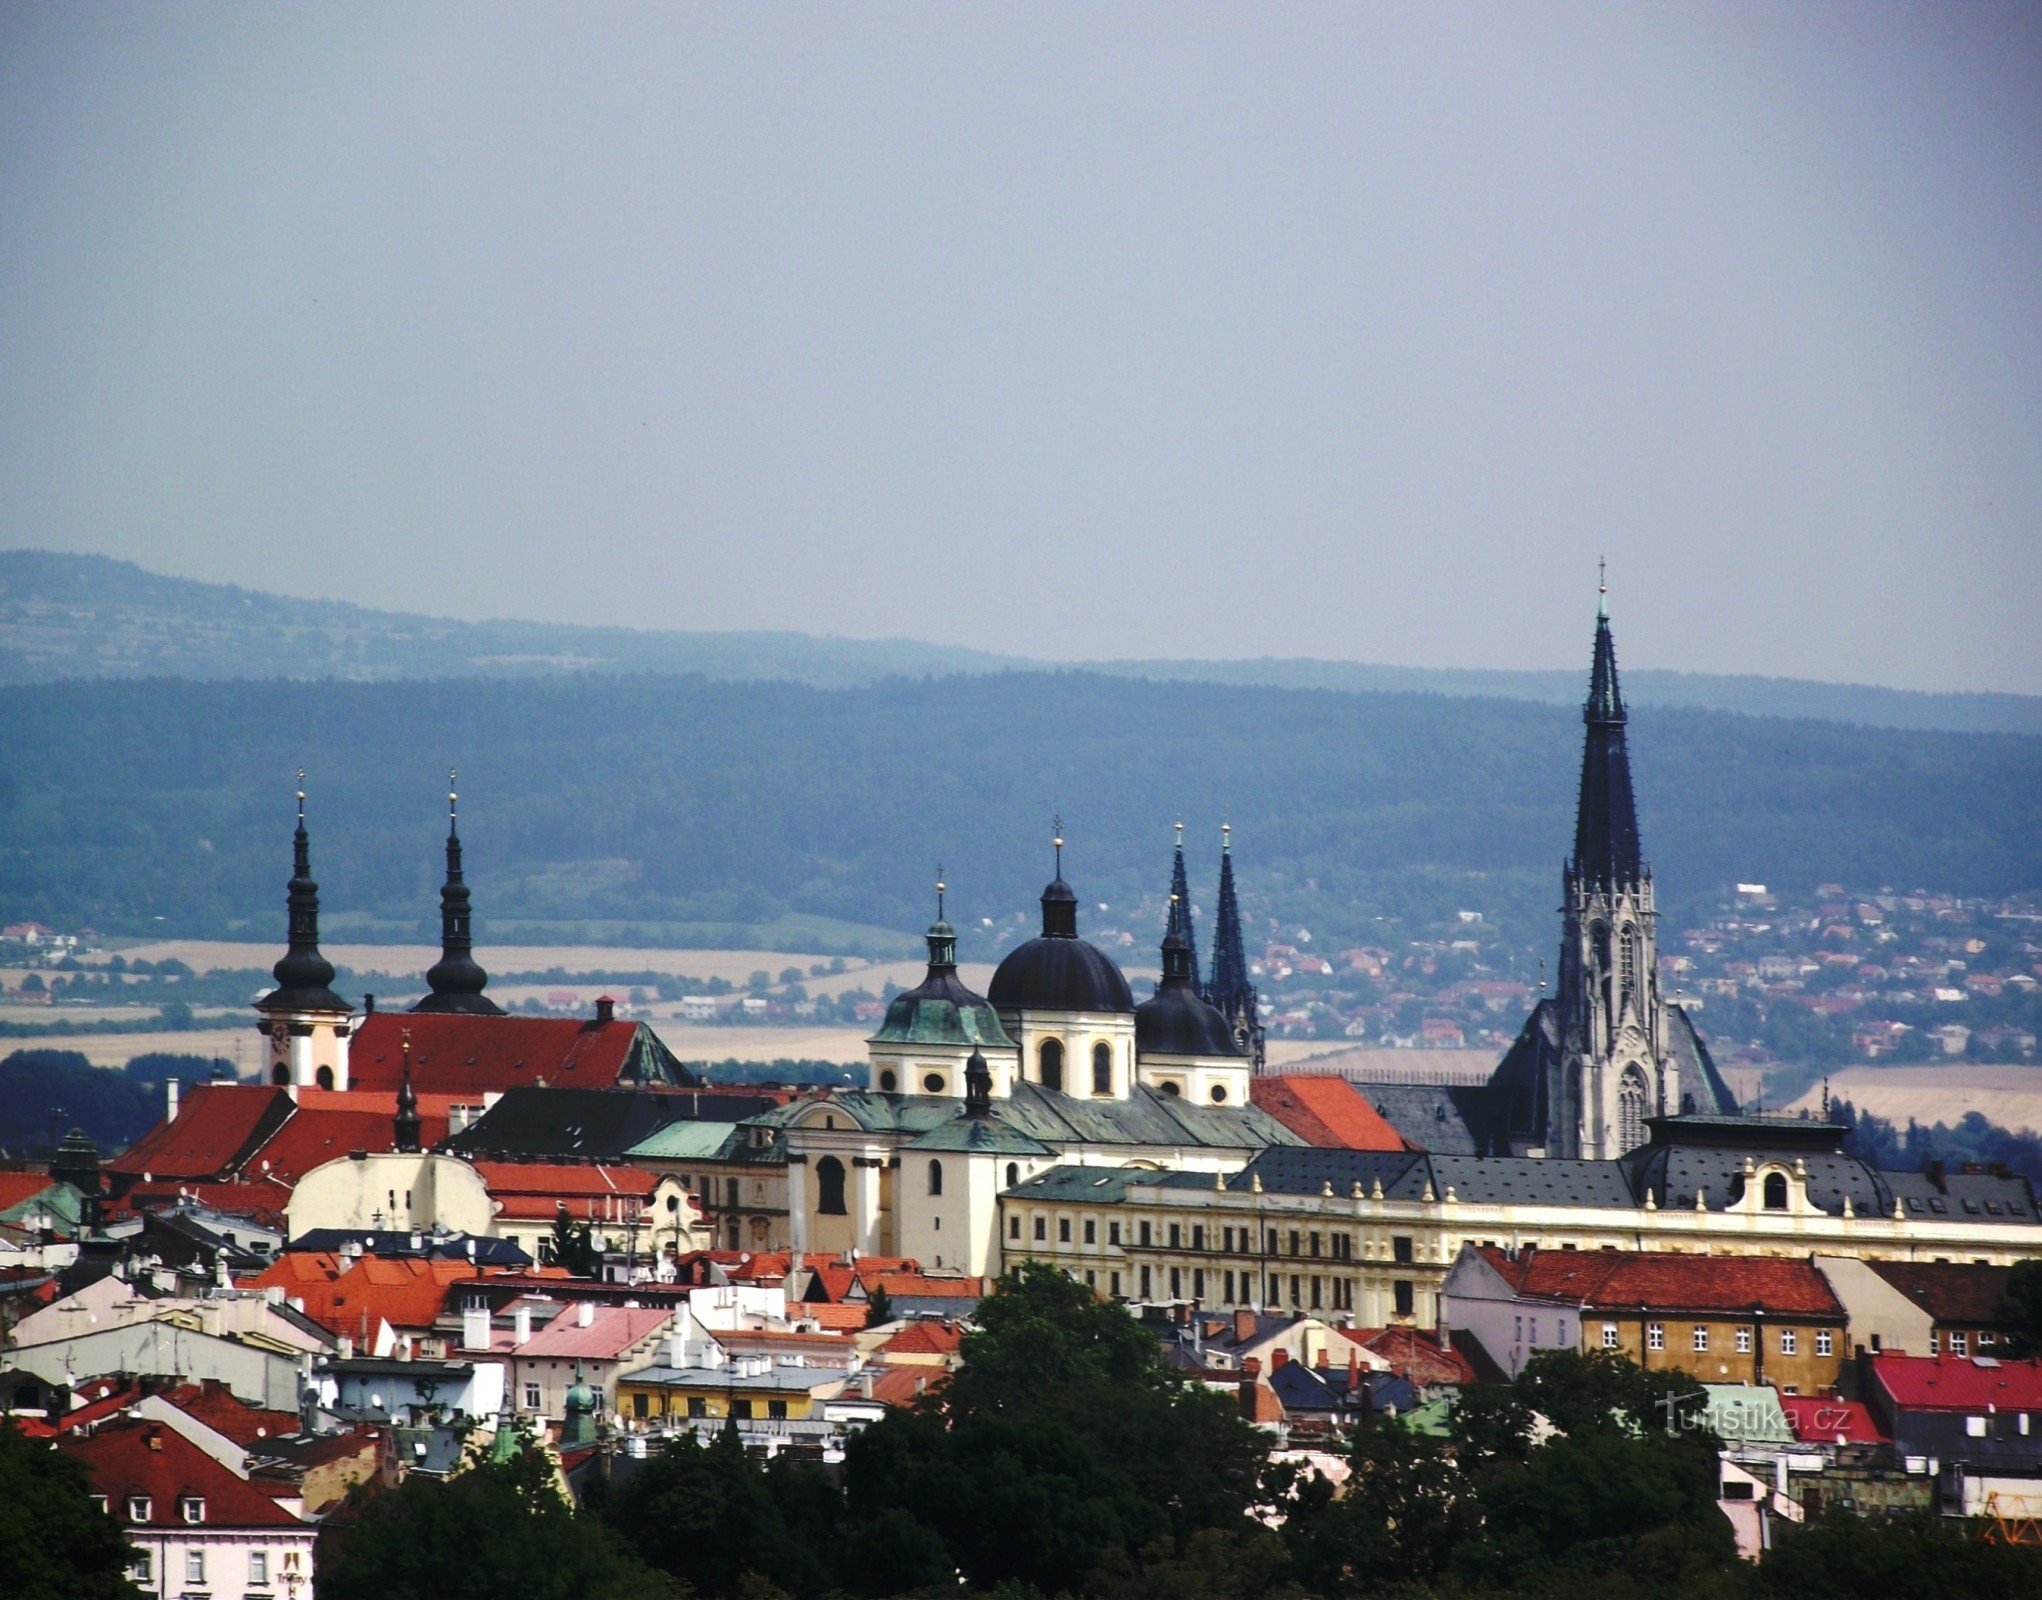 zoom-vista de Olomouc desde el helipuerto